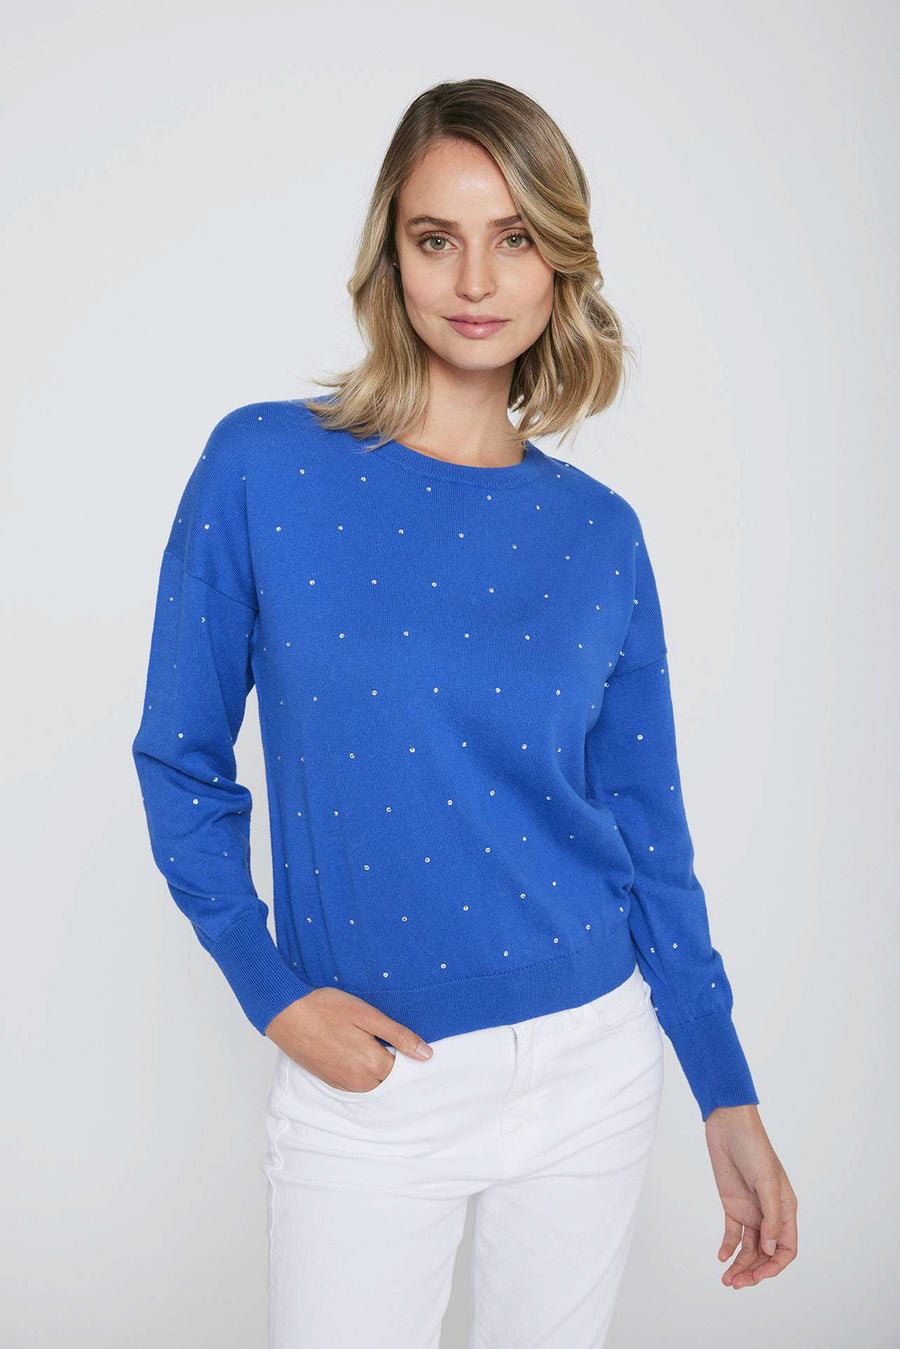 Rhinestone Sweater